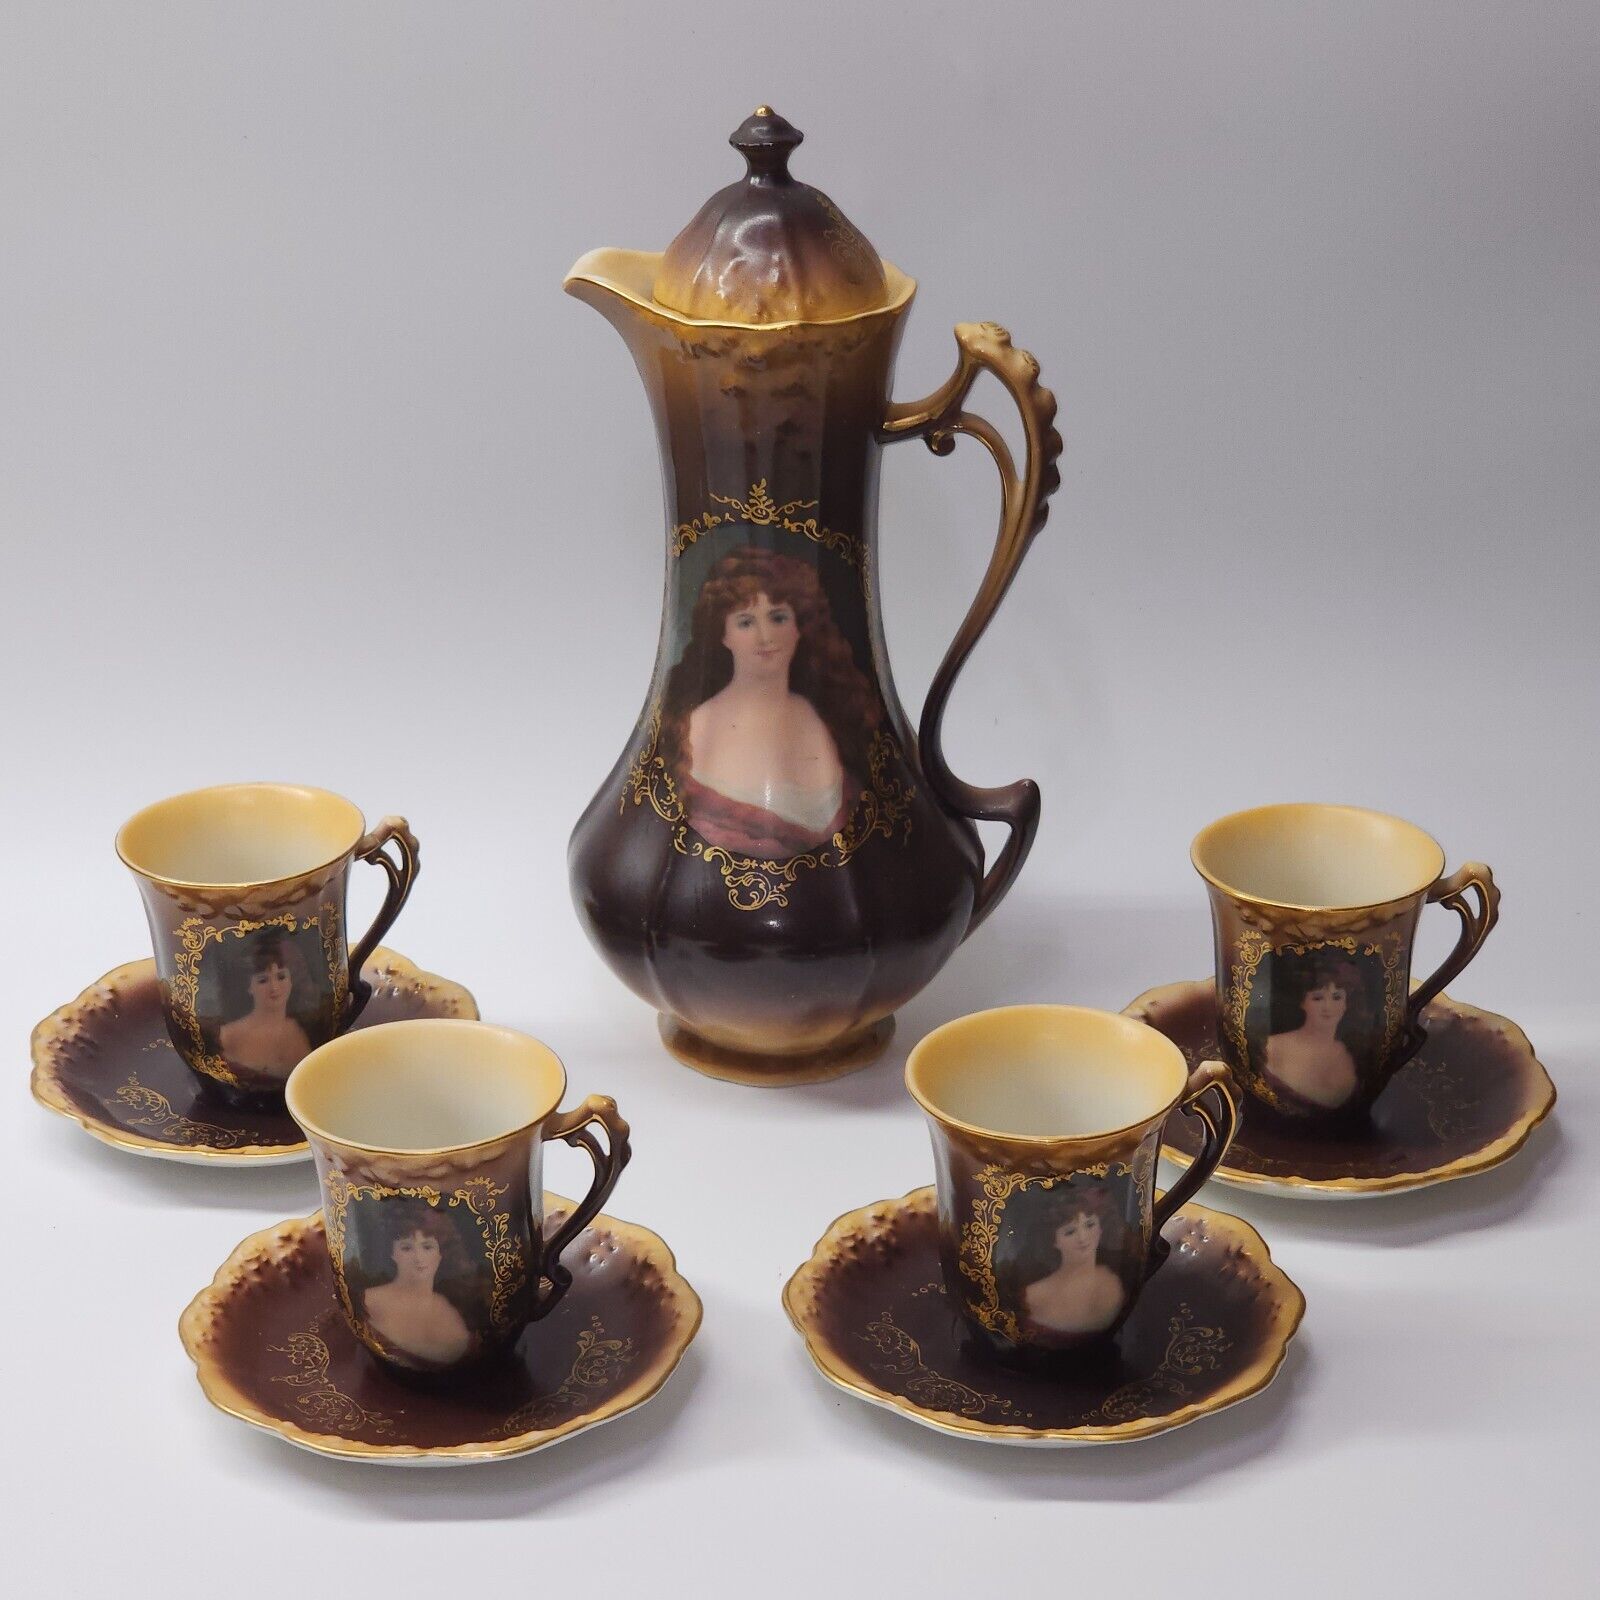 Vintage Antique Fleur De Lys 10-Piece Tea Service Set For 4 - RARE - SHIPS FREE